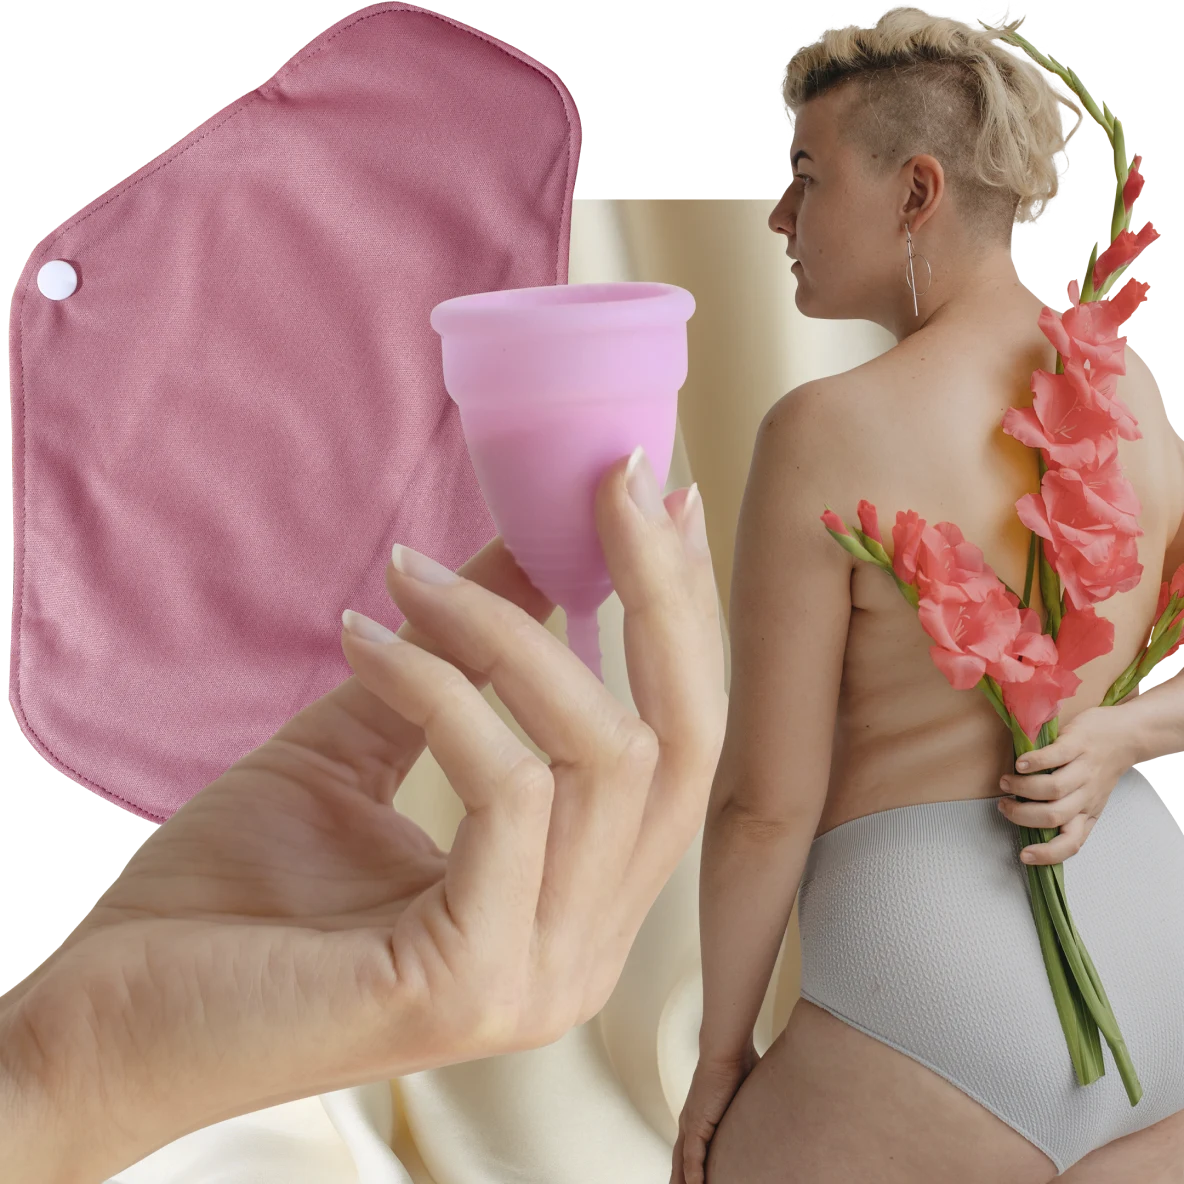 Tangan putih memegang cawan menstruasi merah muda. Pembalut kain merah muda di sisi kiri. Wanita kulit putih dengan rambut pirang pendek memegang bunga merah muda di belakang punggungnya di sebelah kanan.